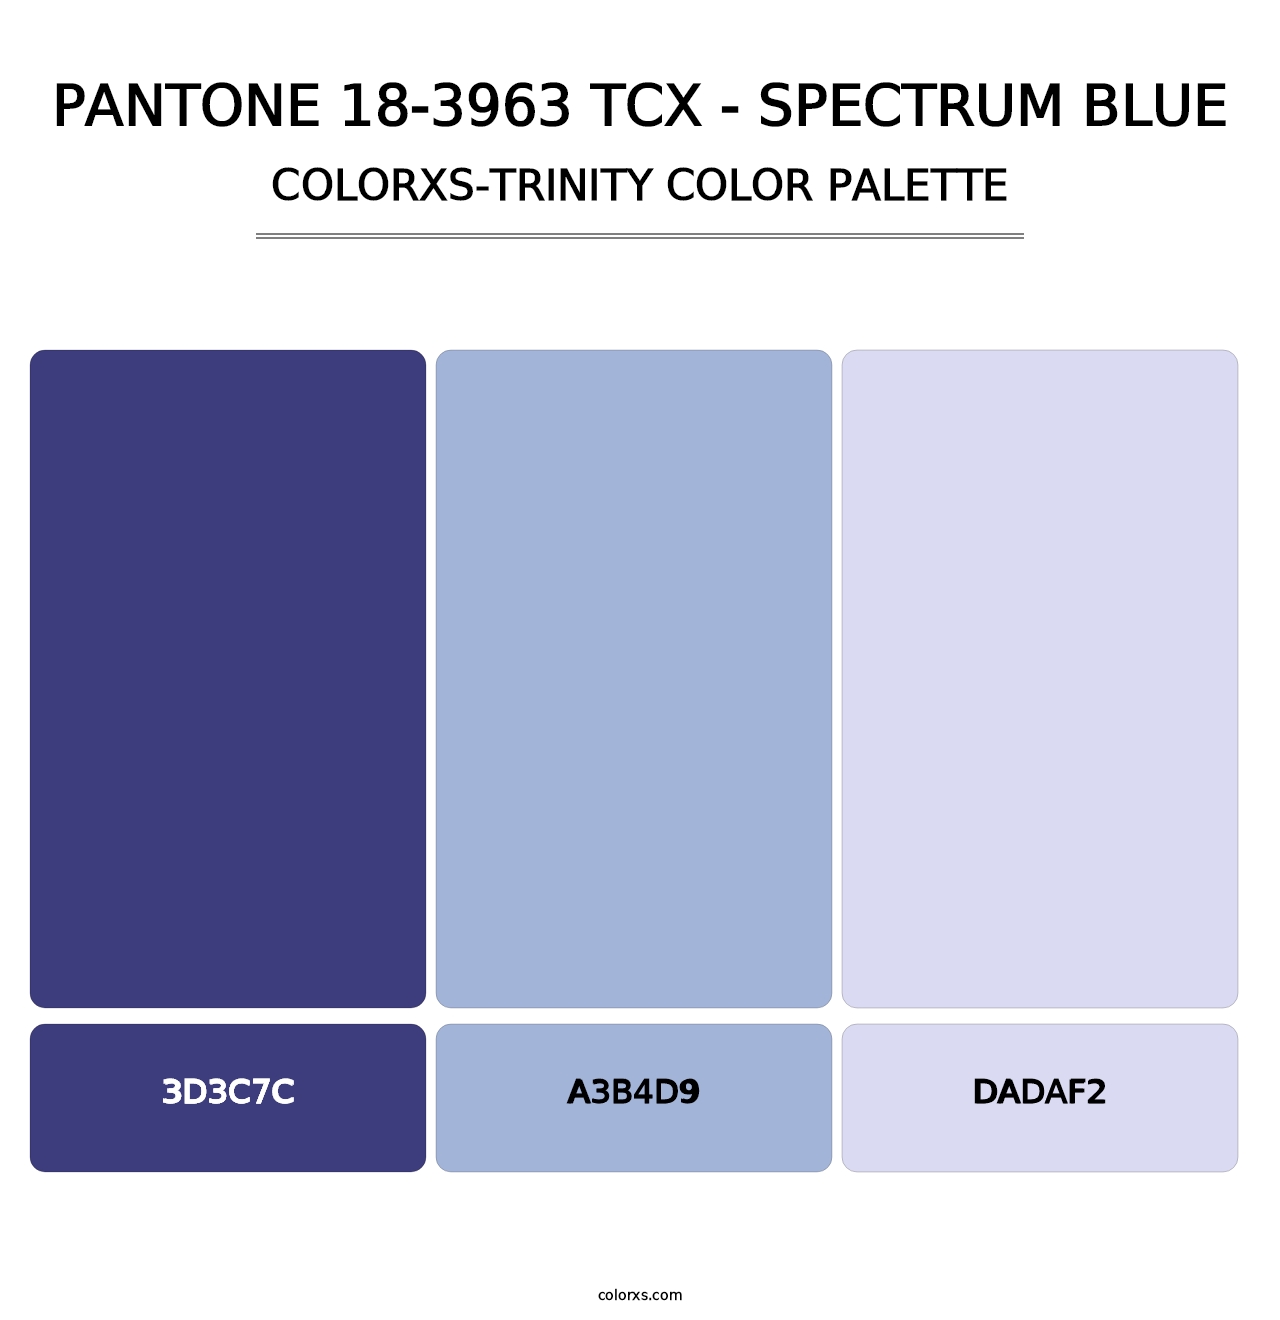 PANTONE 18-3963 TCX - Spectrum Blue - Colorxs Trinity Palette